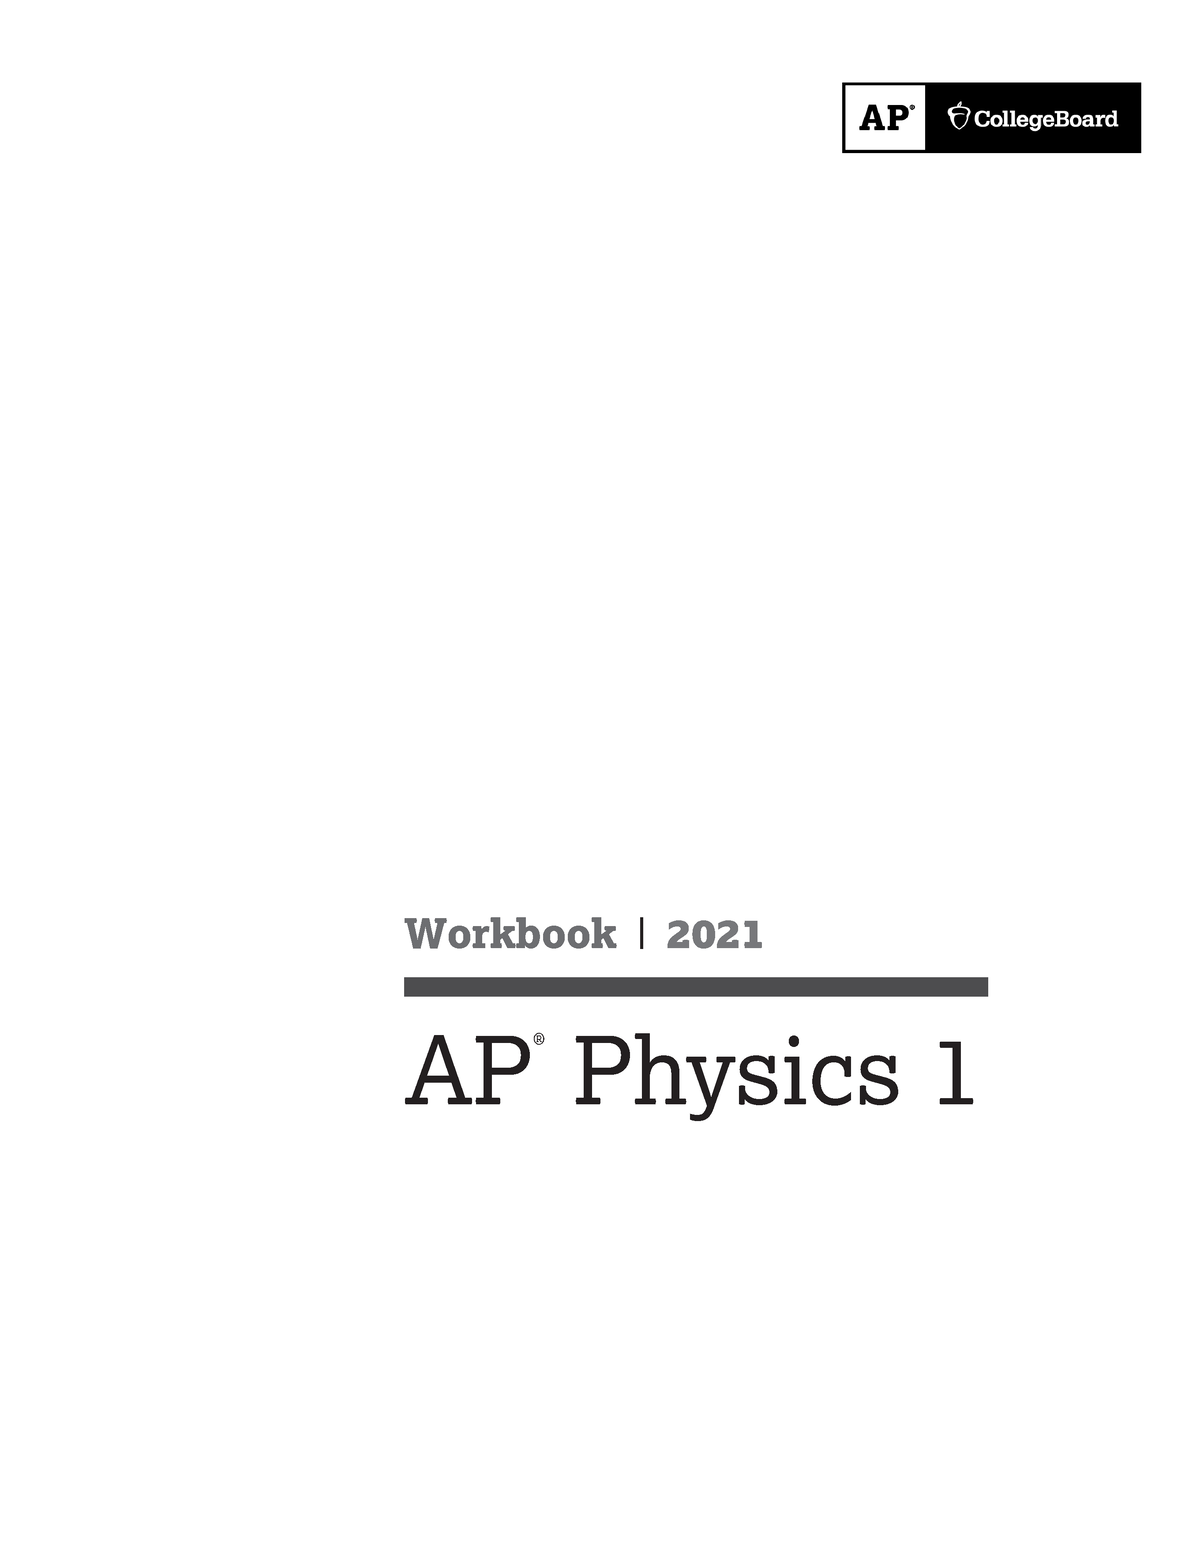 AP Physics 1 Workbook SE Workbook 2021 AP ® Physics 1 Workbook